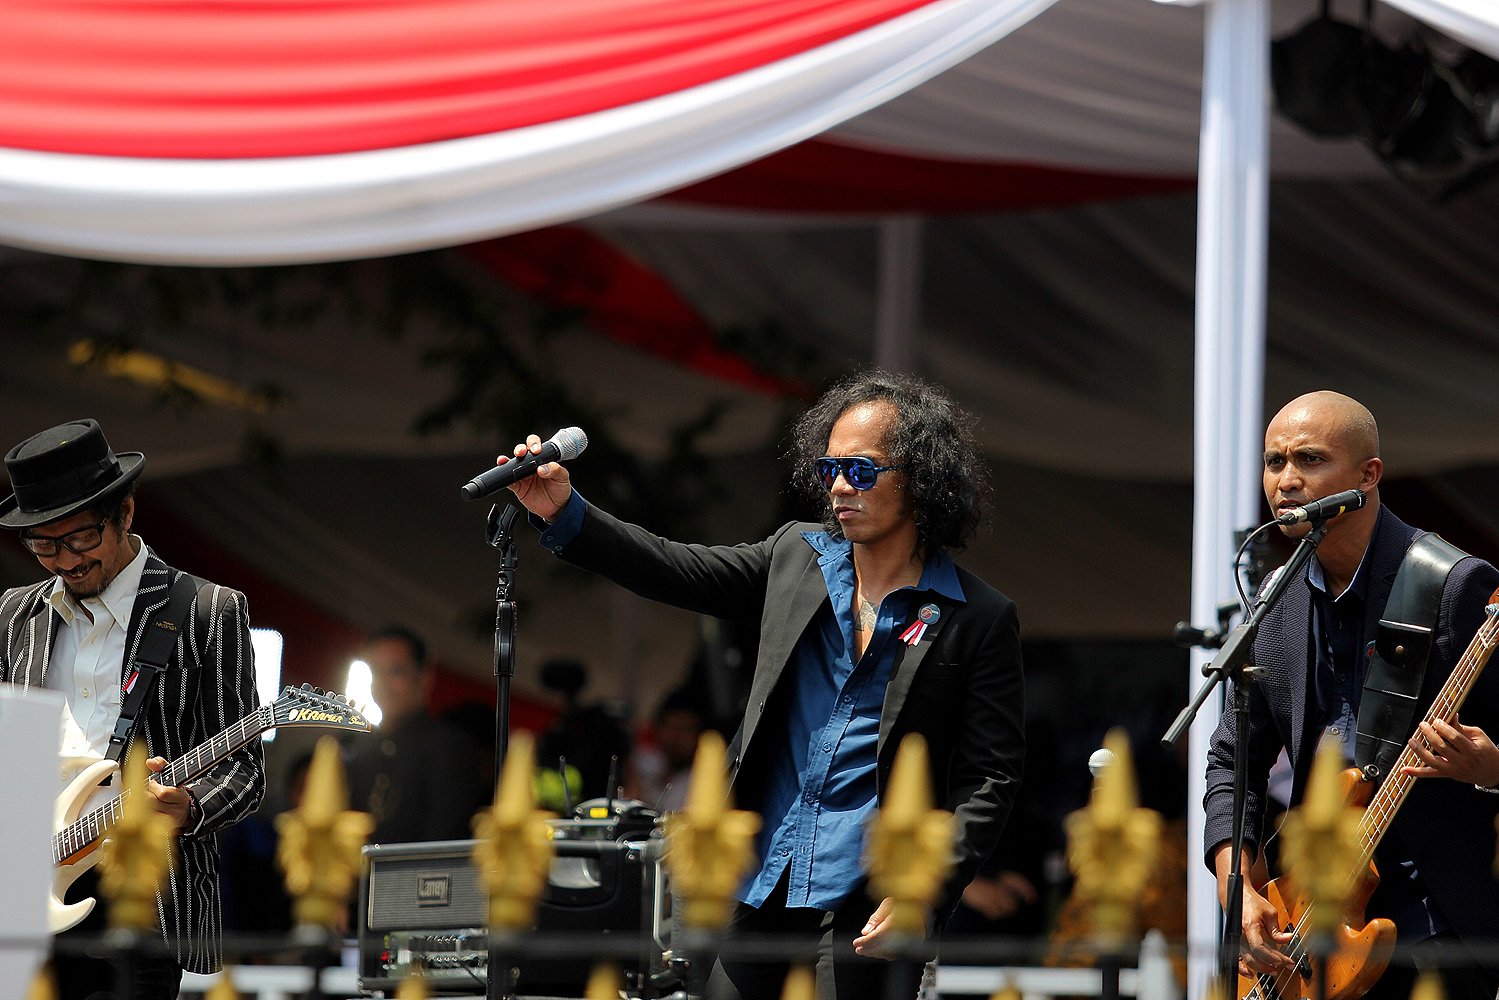 Penampilan grup musik Slank dalam Upacara 17 Agustus 2016 di Istana Merdeka, Jakarta, Rabu, (17/08).